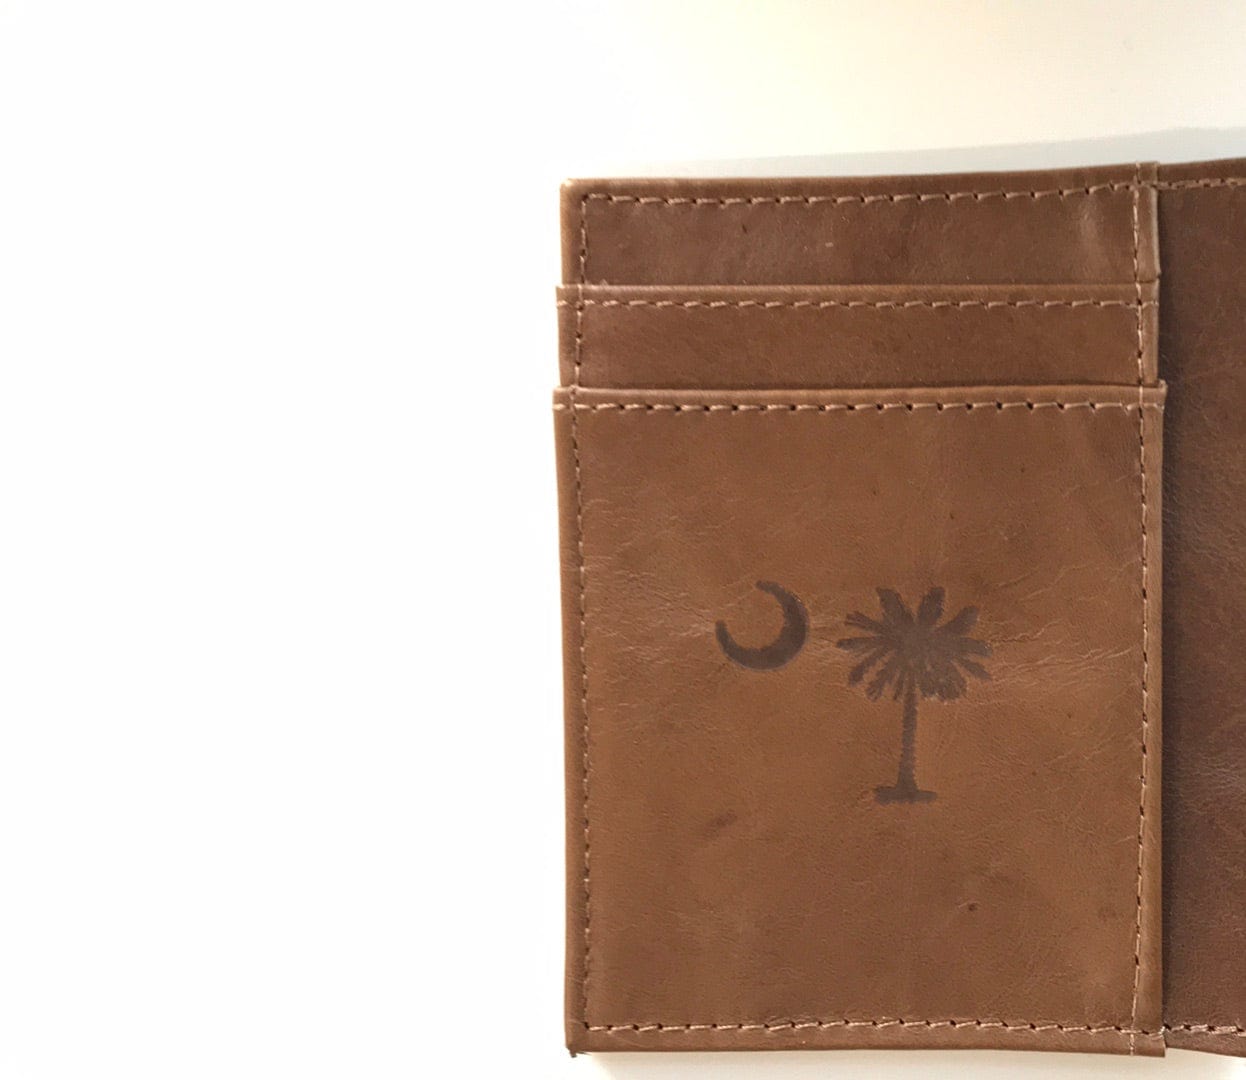 Zep-Pro Handbags, Wallets & Cases Palmetto Tan Slim Front Pocket Wallet